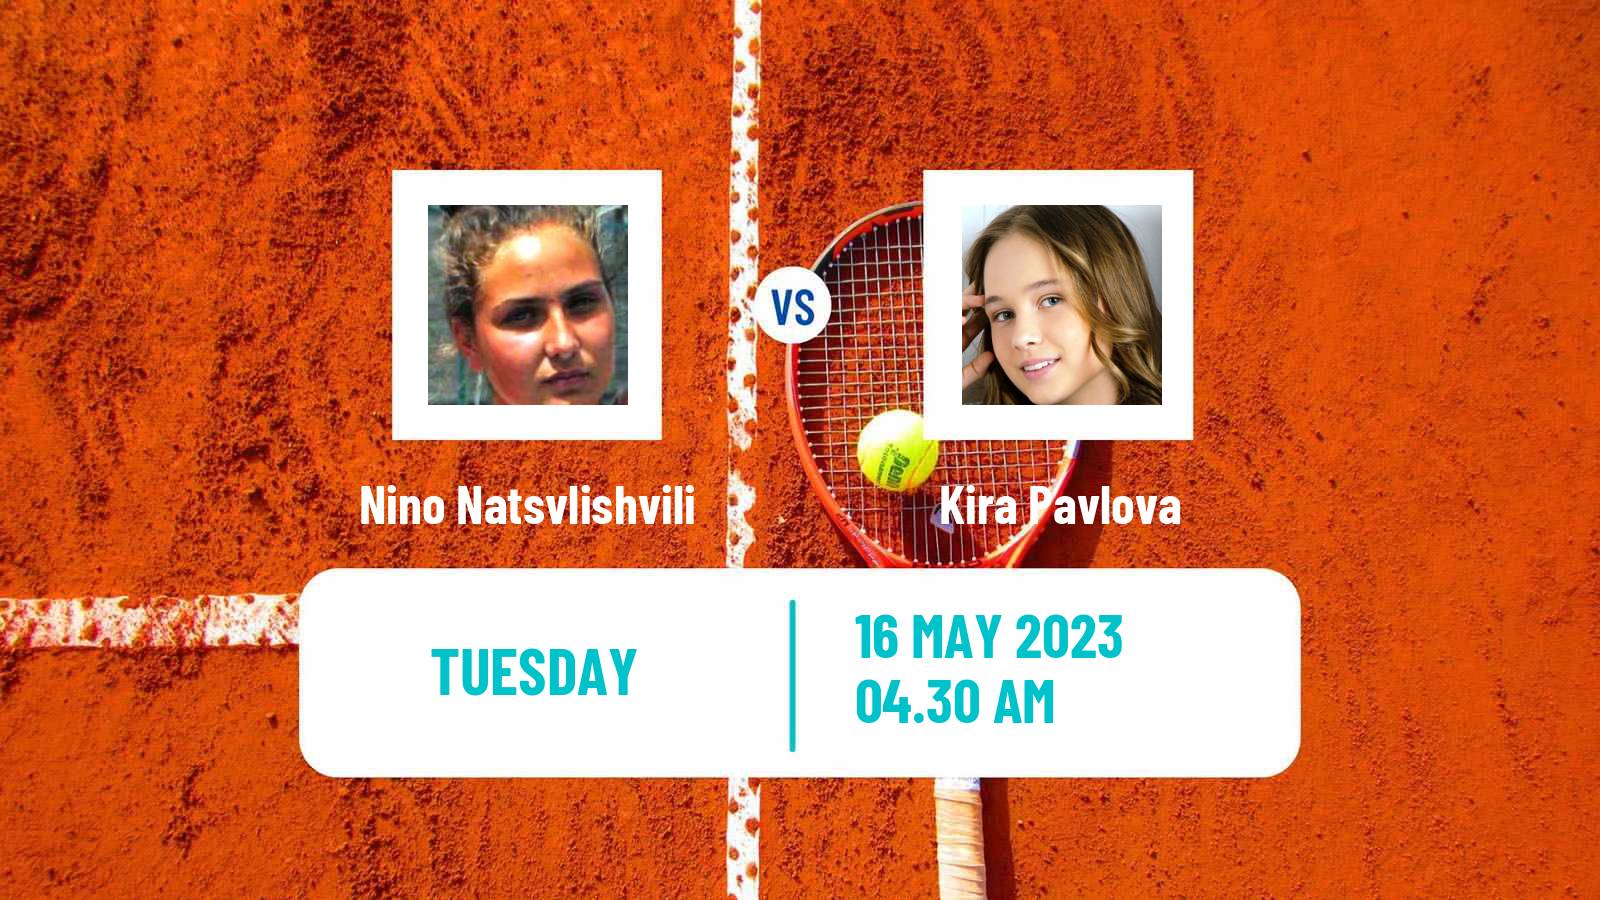 Tennis ITF W25 Kachreti 2 Women Nino Natsvlishvili - Kira Pavlova